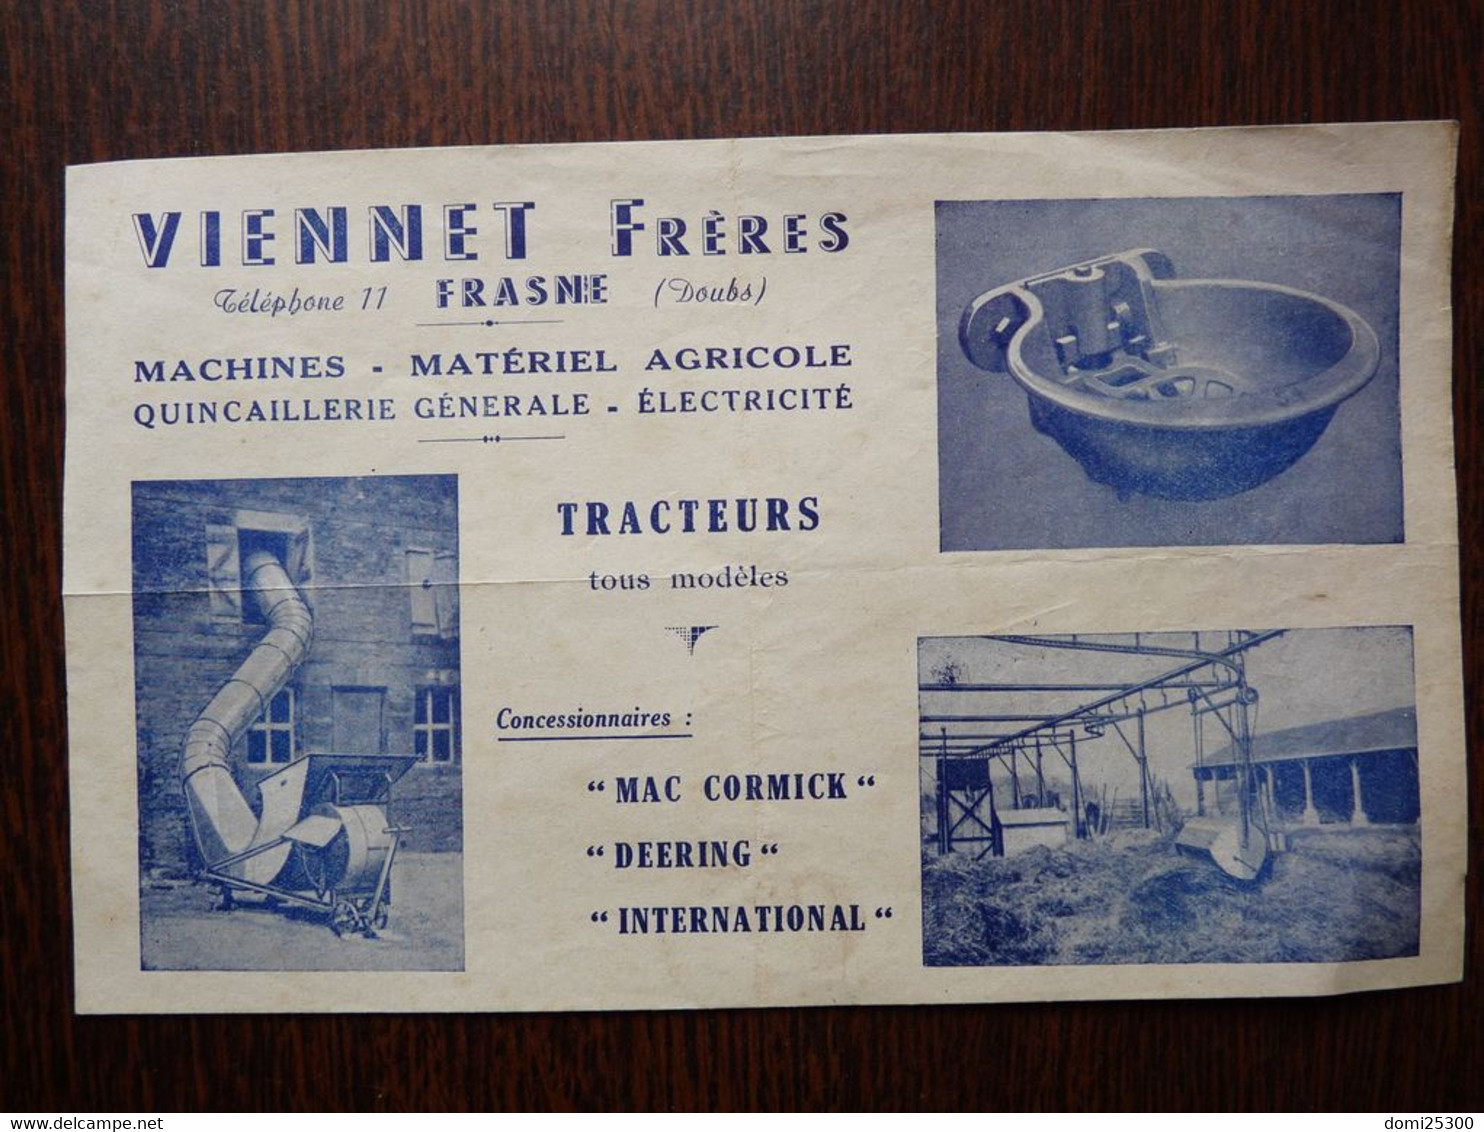 25 – PUBLICITE – FRASNE (Doubs) – VIENNET Frères - MATERIEL AGRICOLE – Affichette (21xmx13cm) Publicitaire - Werbung